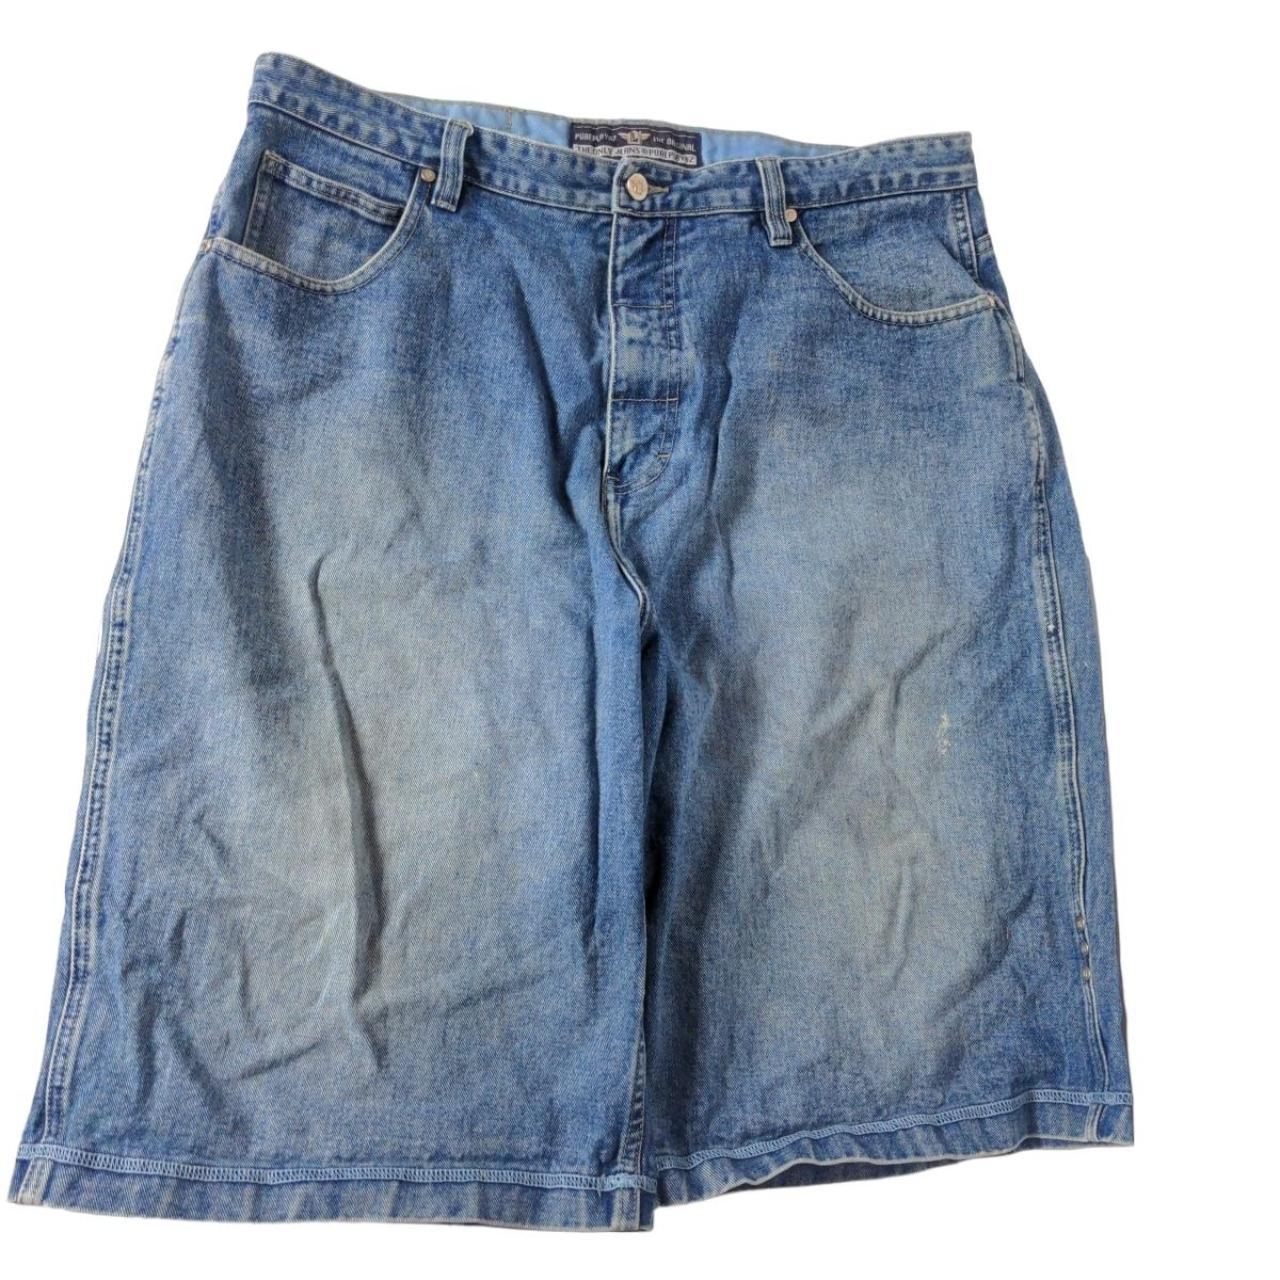 Pure Playaz Men's Denim Shorts Size 38X13 Solid Blue... - Depop